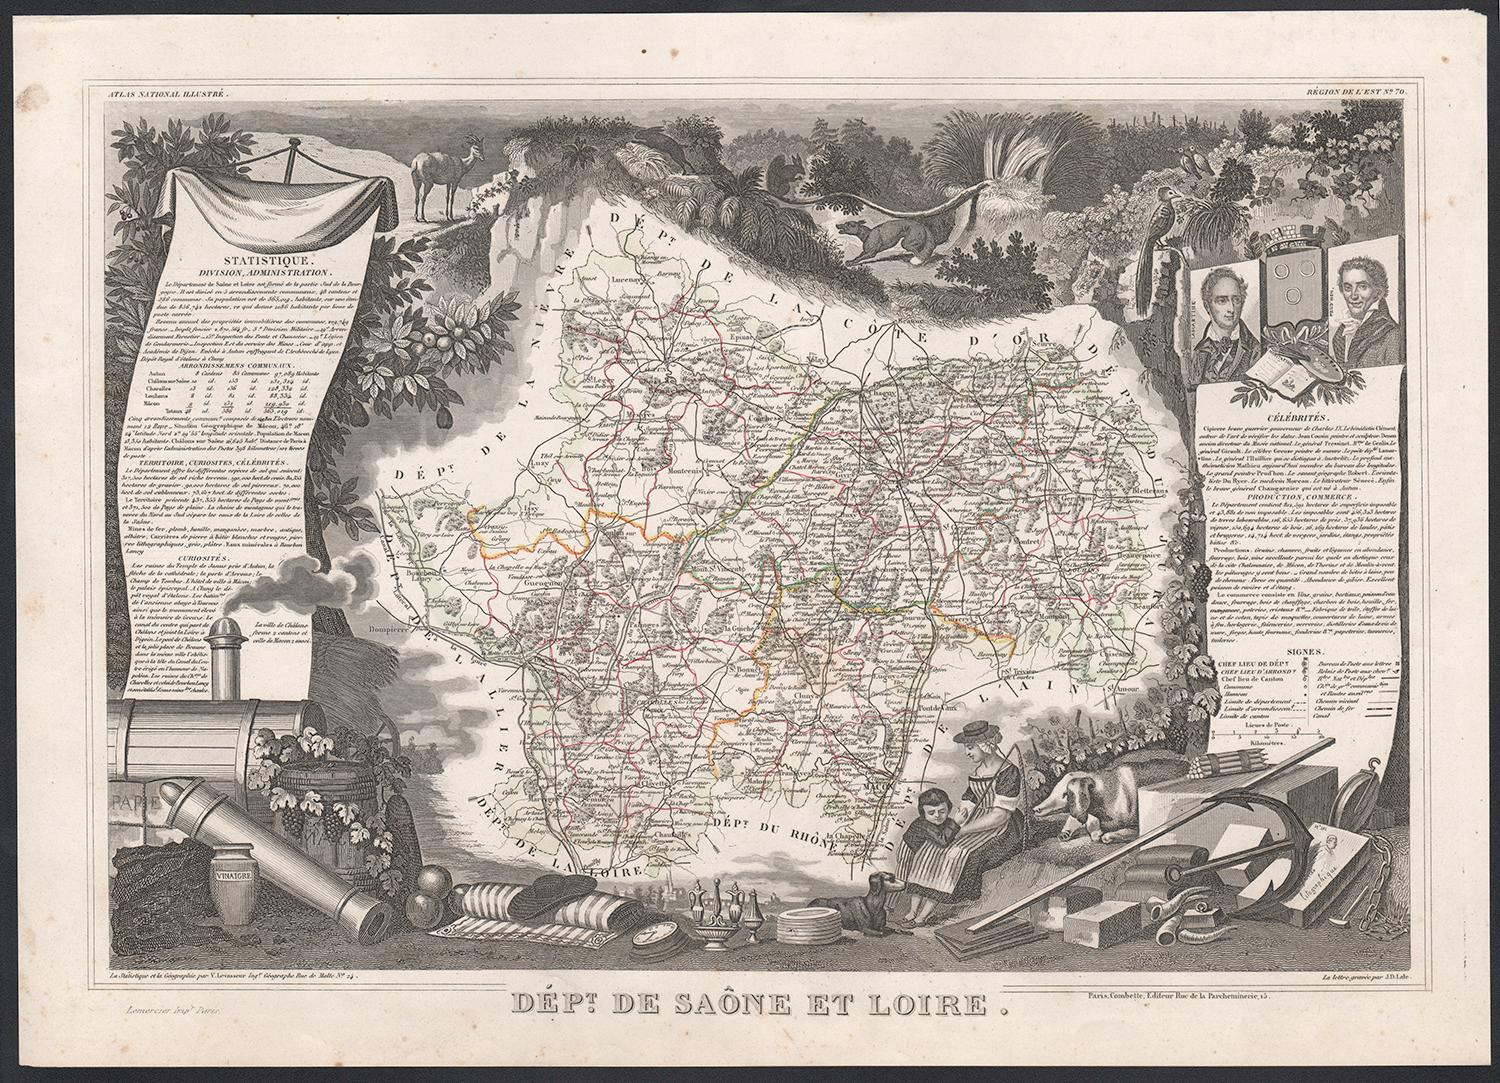 Saone et Loire, France. Carte ancienne d'un département français, 1856